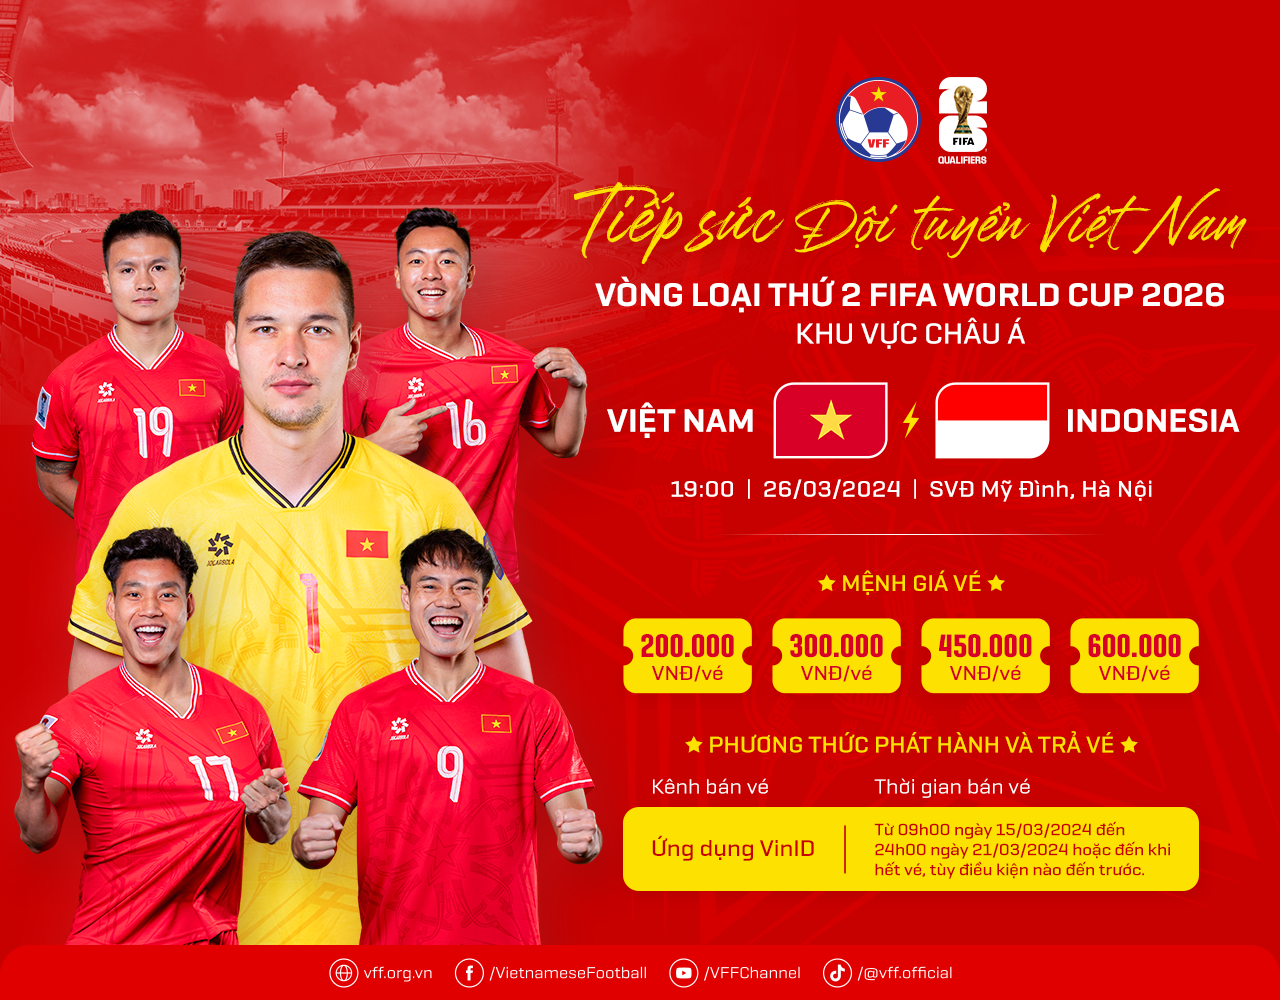 Vé trận đấu tuyển Việt Nam gặp Indonesia cao nhất 600.000 đồng - 2